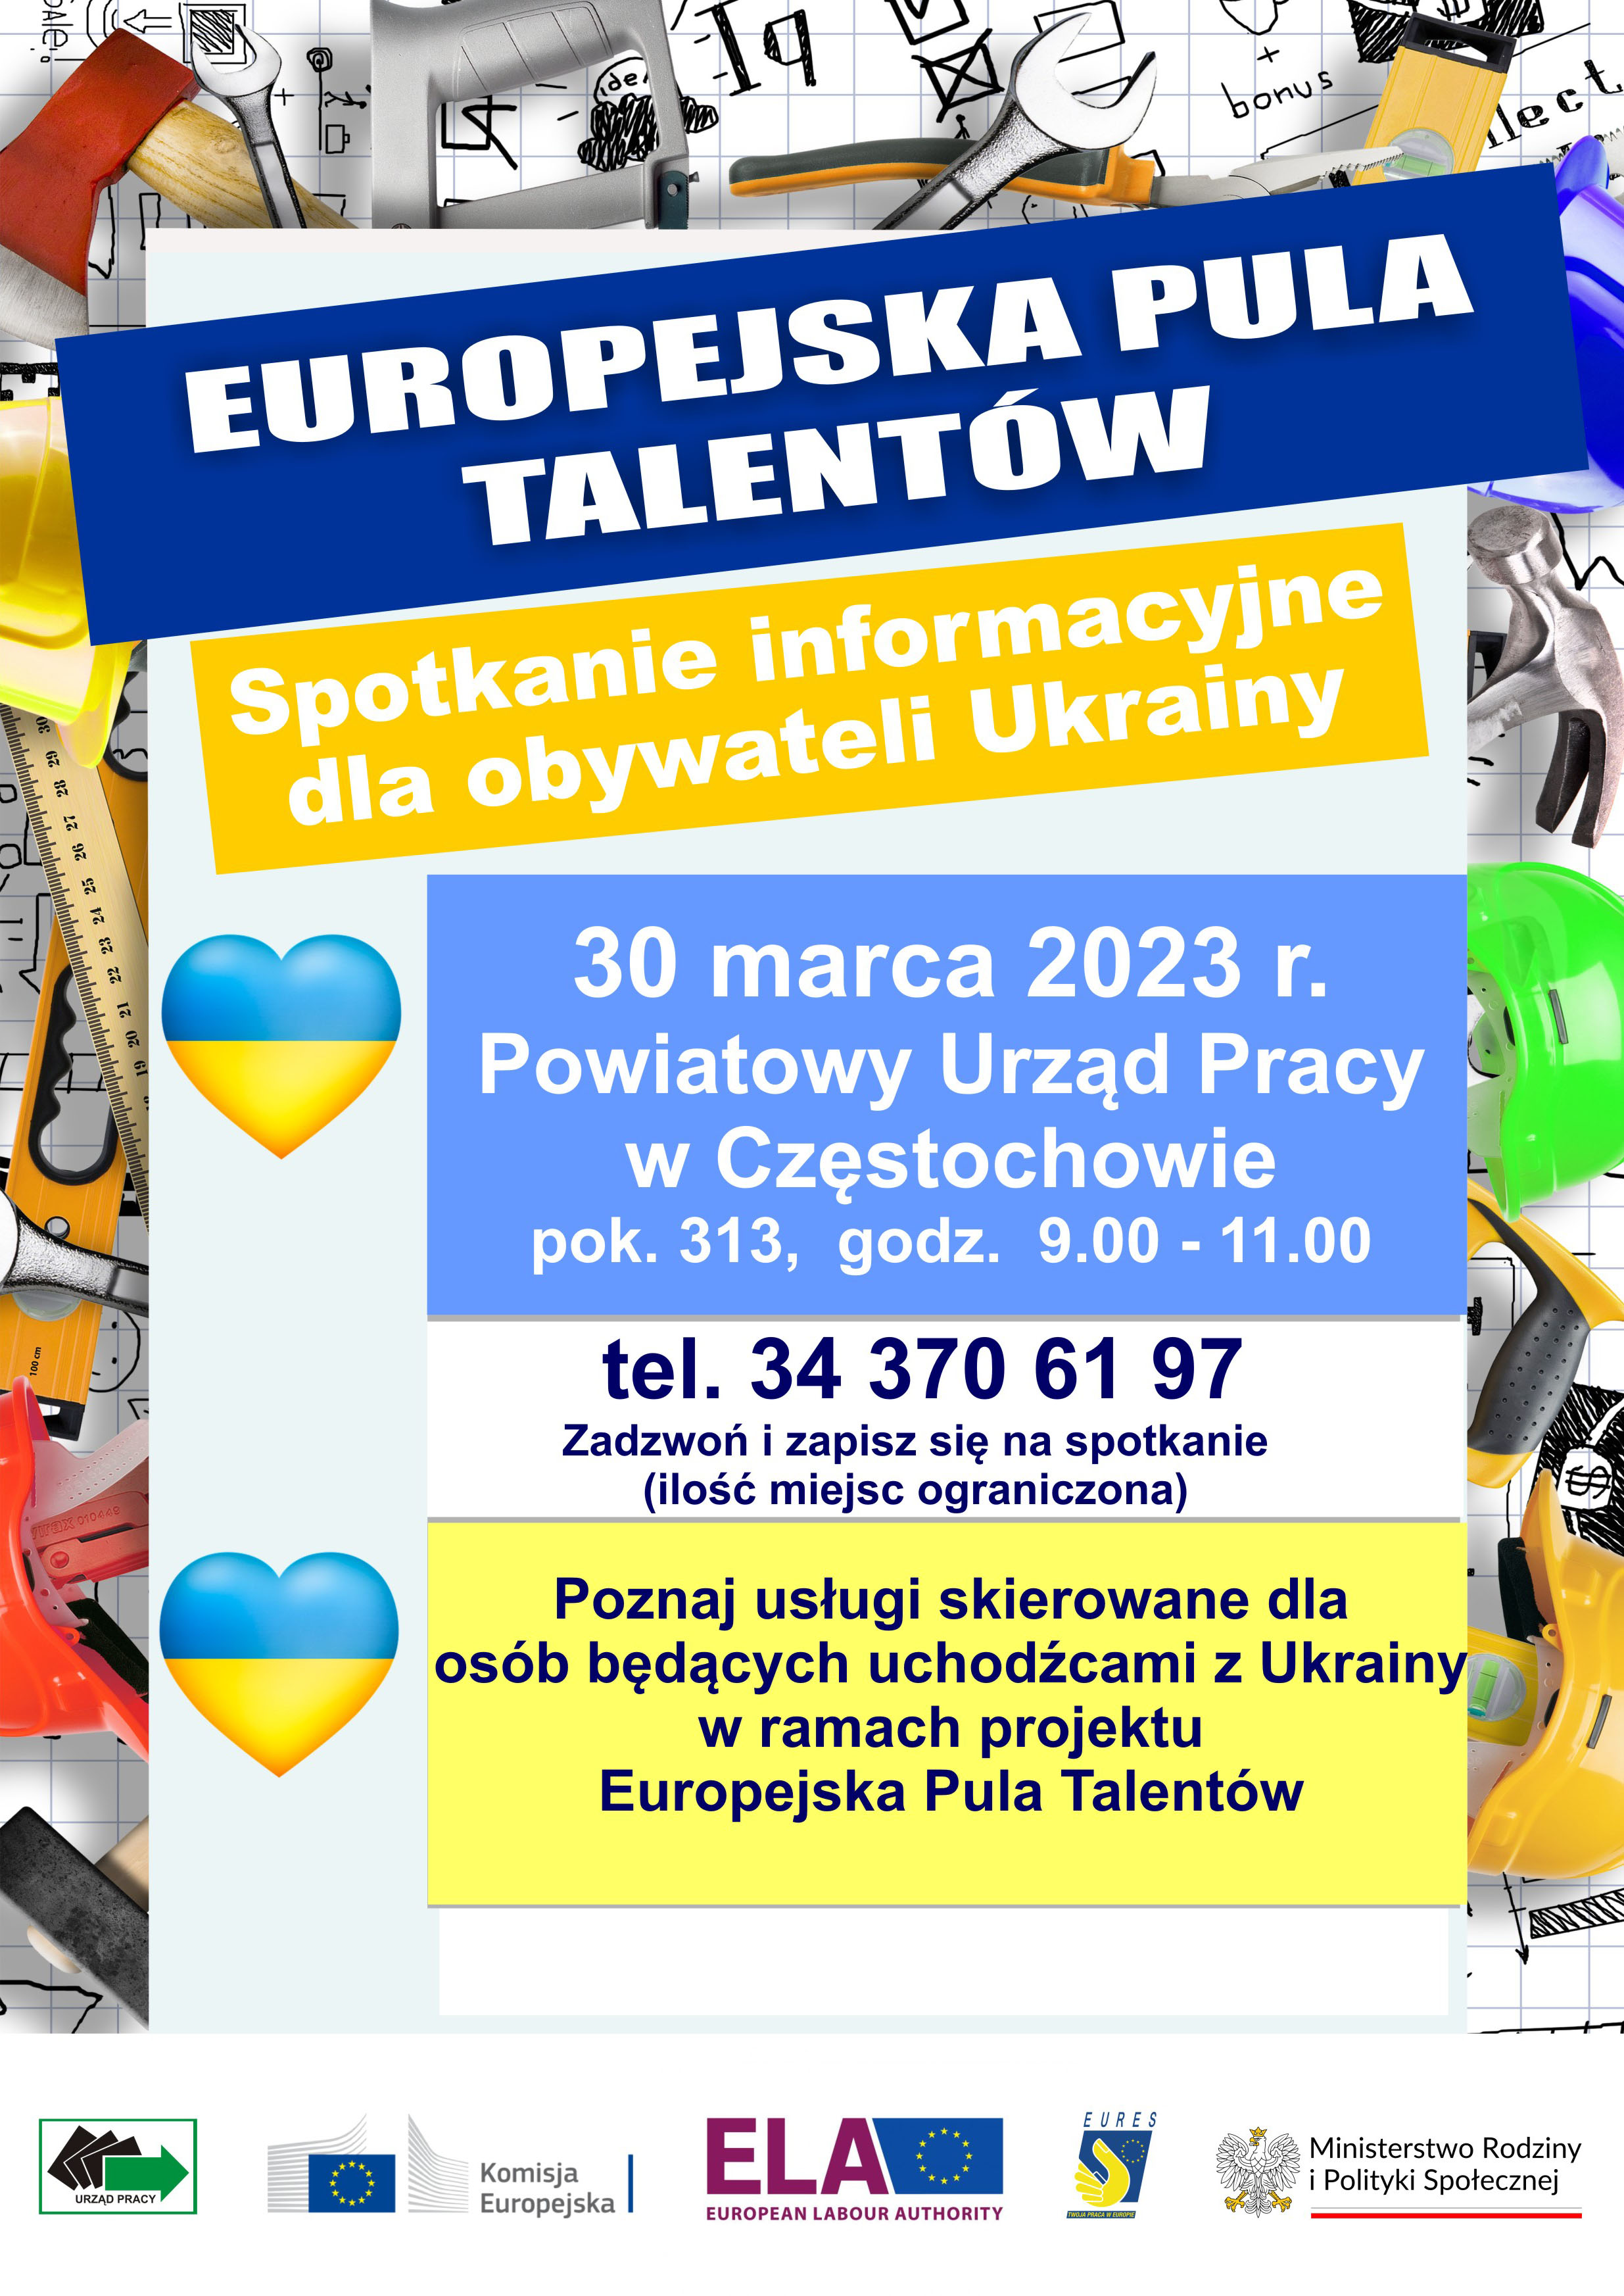 Europejska Pula Talentów - graficzna prezentacja informacji zamieszczonej powyżej